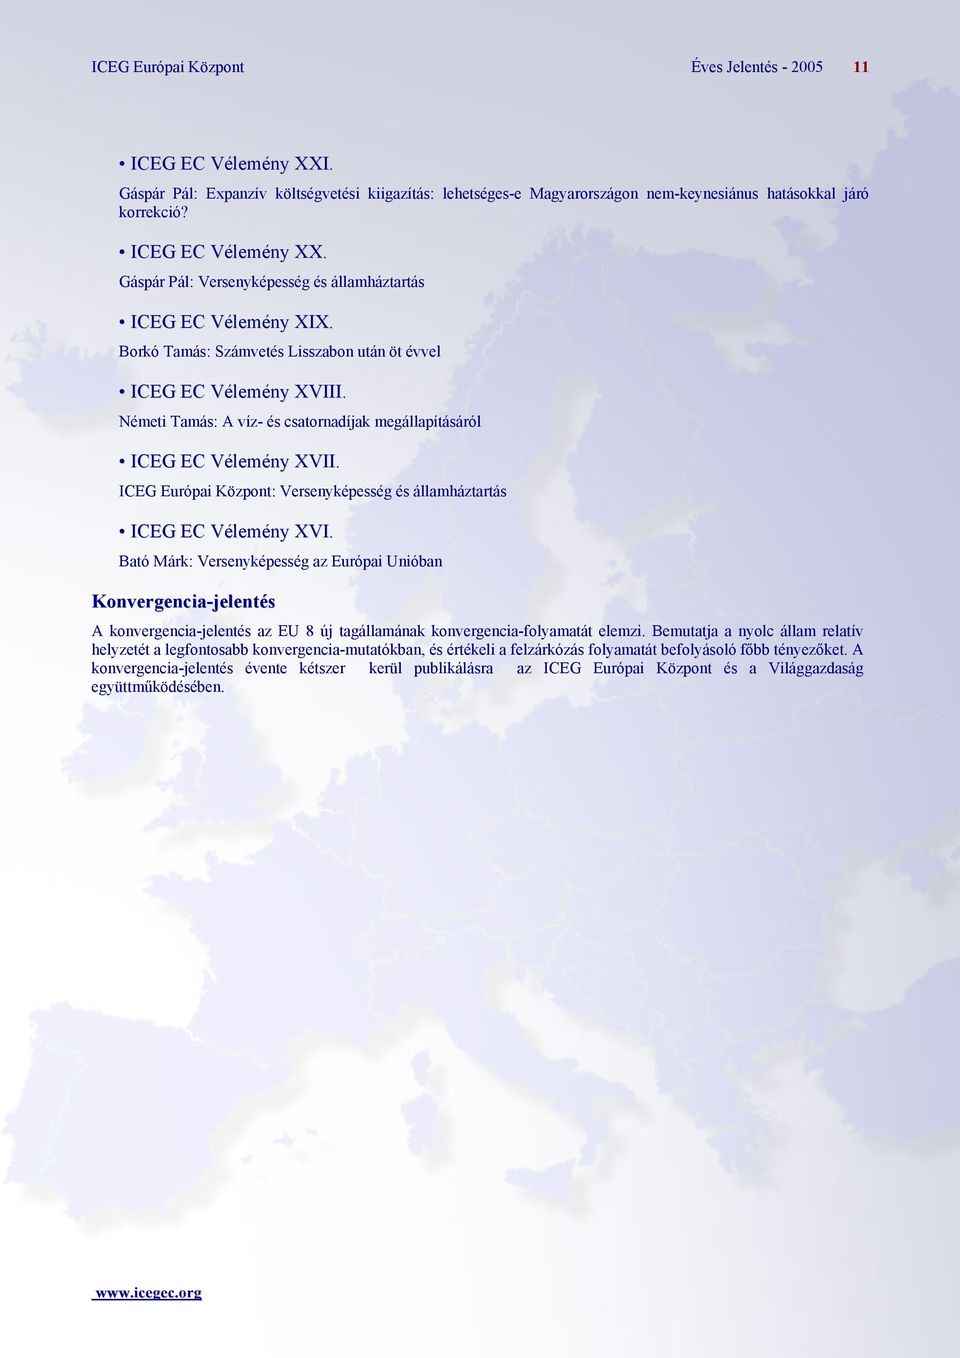 ICEG Európai Központ: Versenyképesség és államháztartás ICEG EC Vélemény XVI.